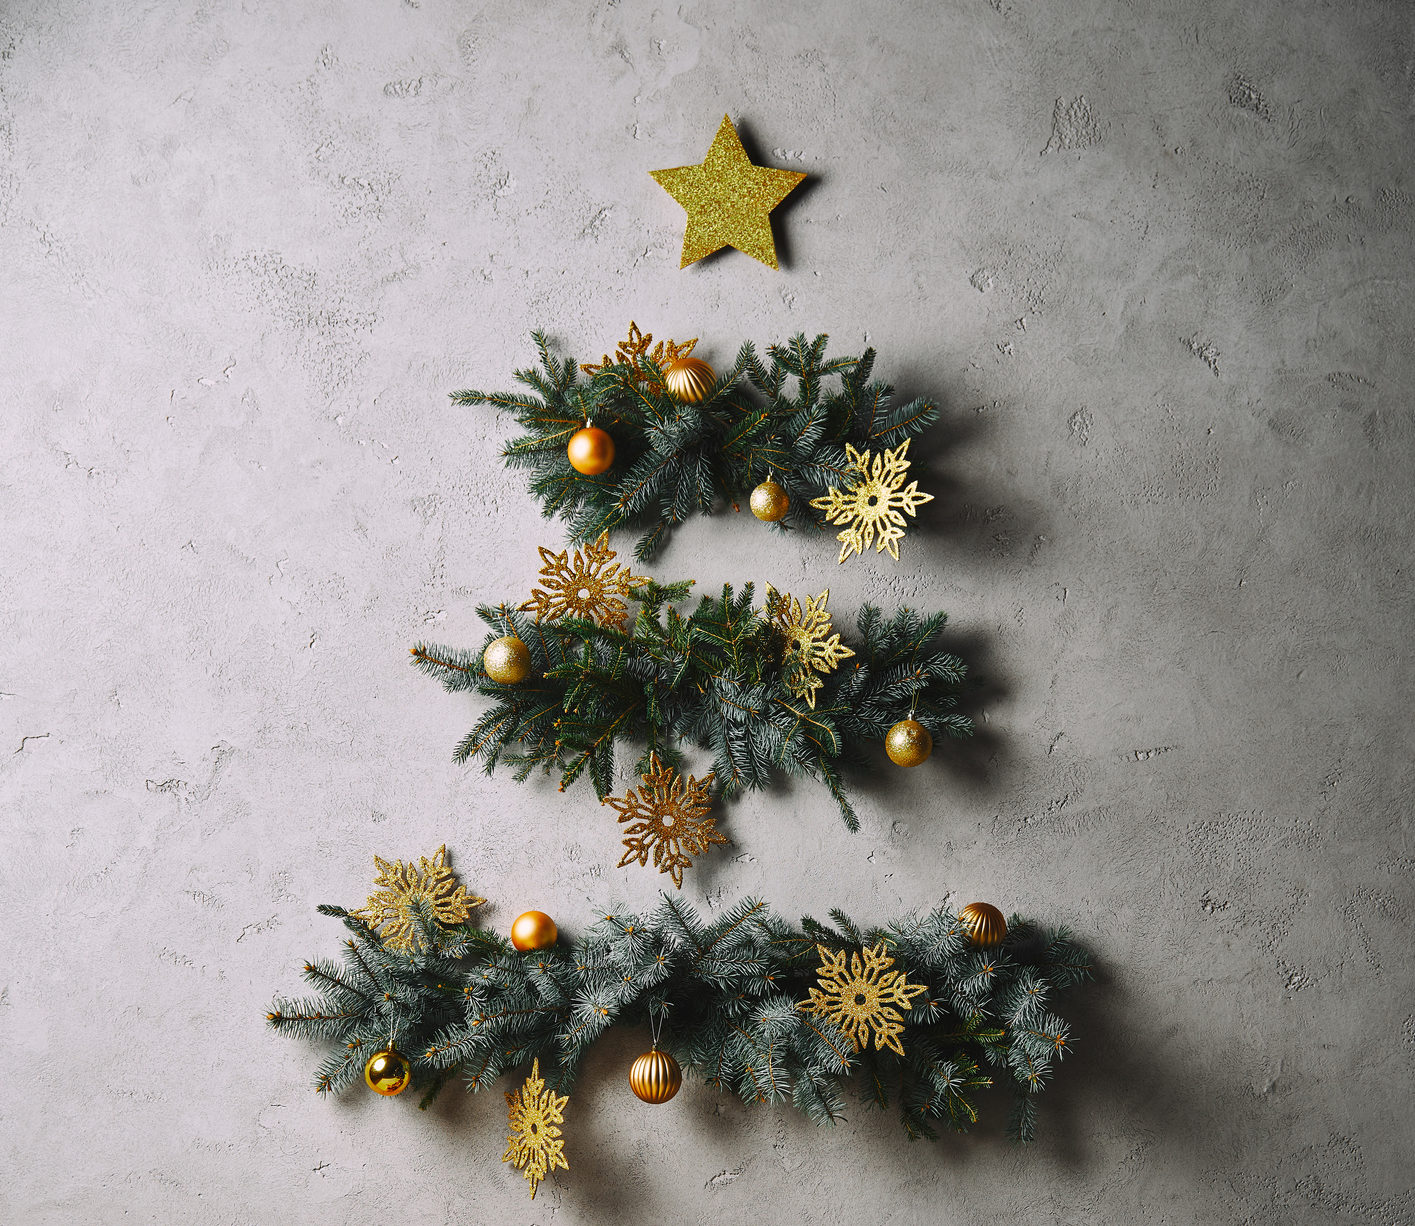 Festão, flores e enfeites natalinos podem formar sua árvore de Natal.